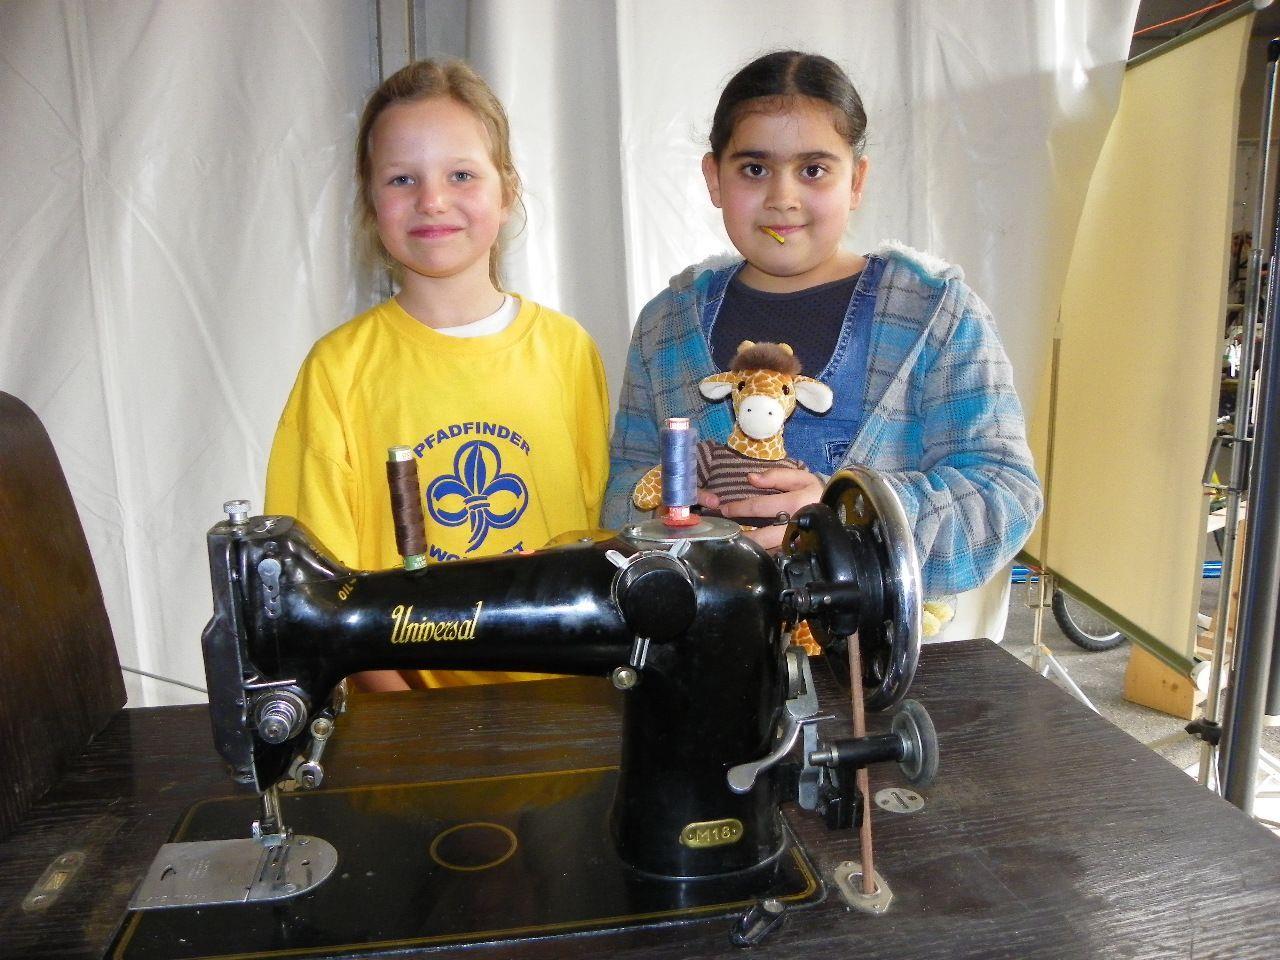 Elena-Sophie und Melda bieten eine Nähmaschine zum Kauf an